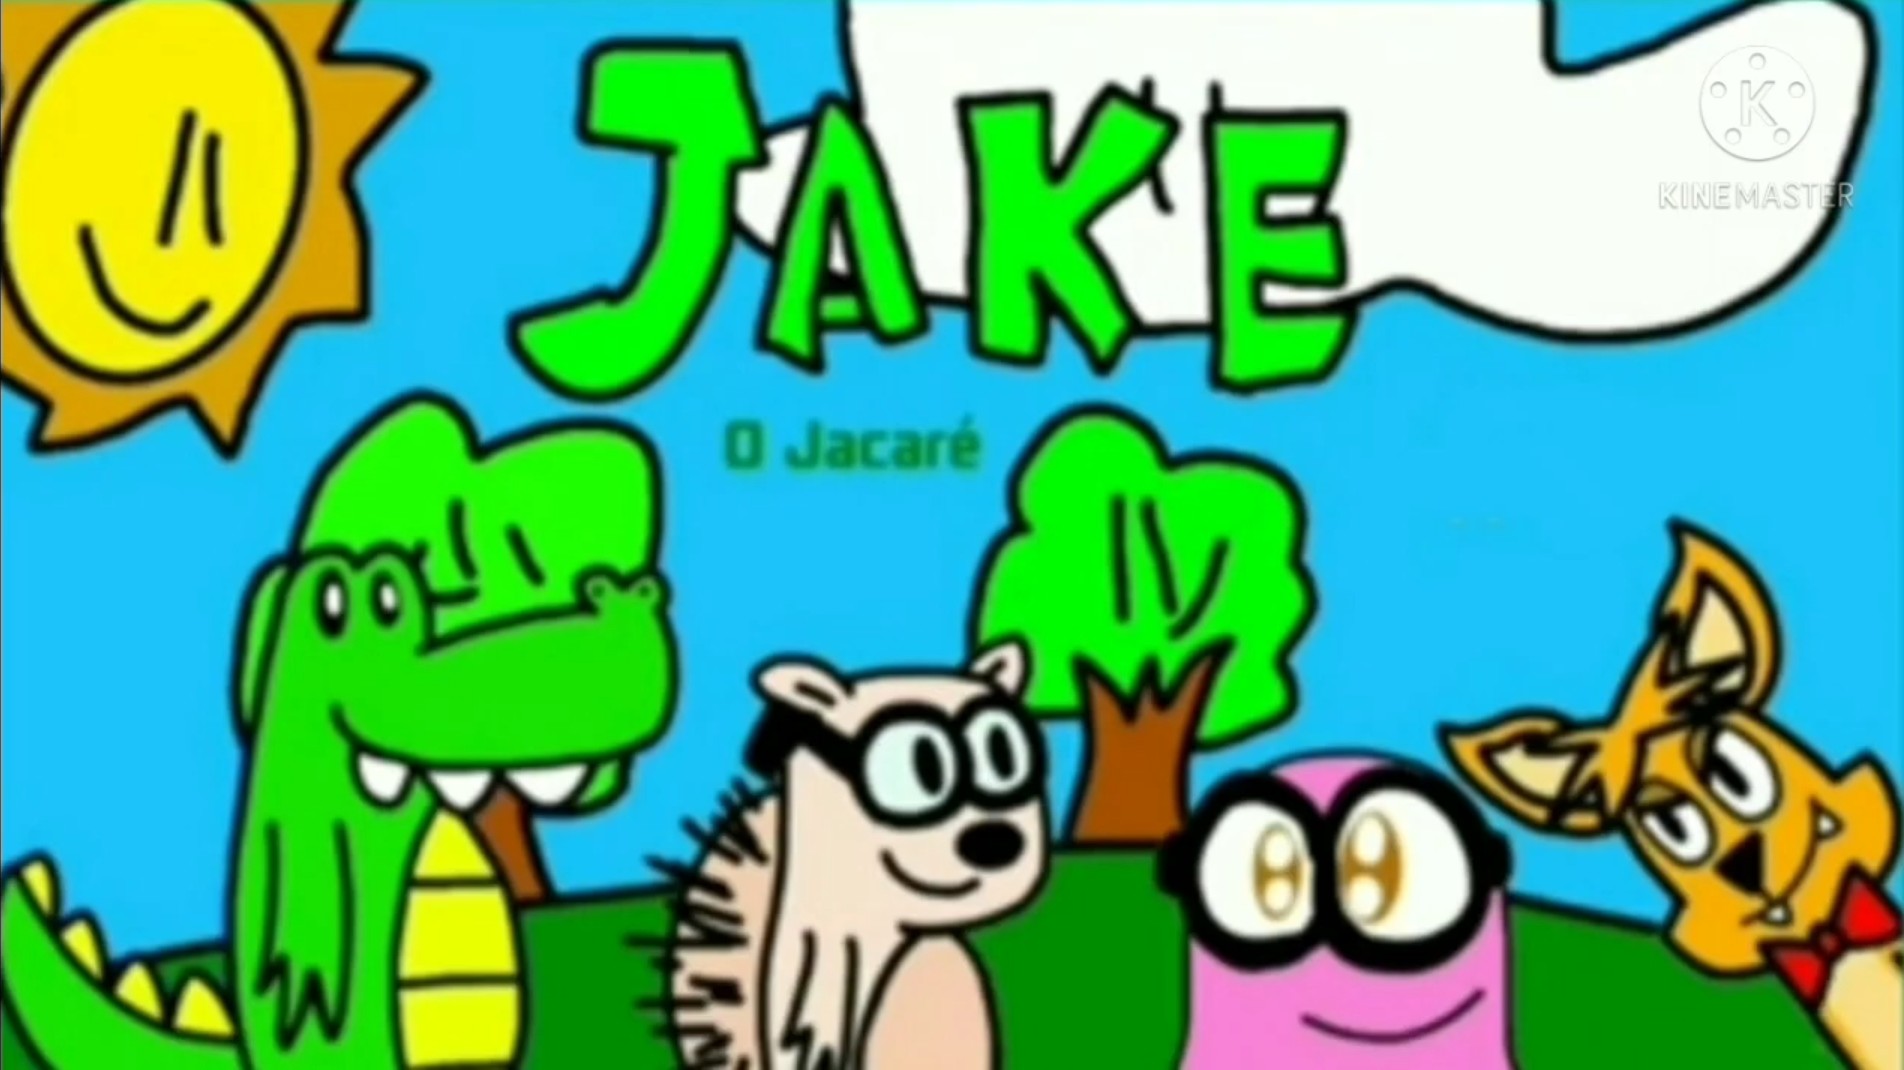 Sam, Jake o Jacaré Wiki